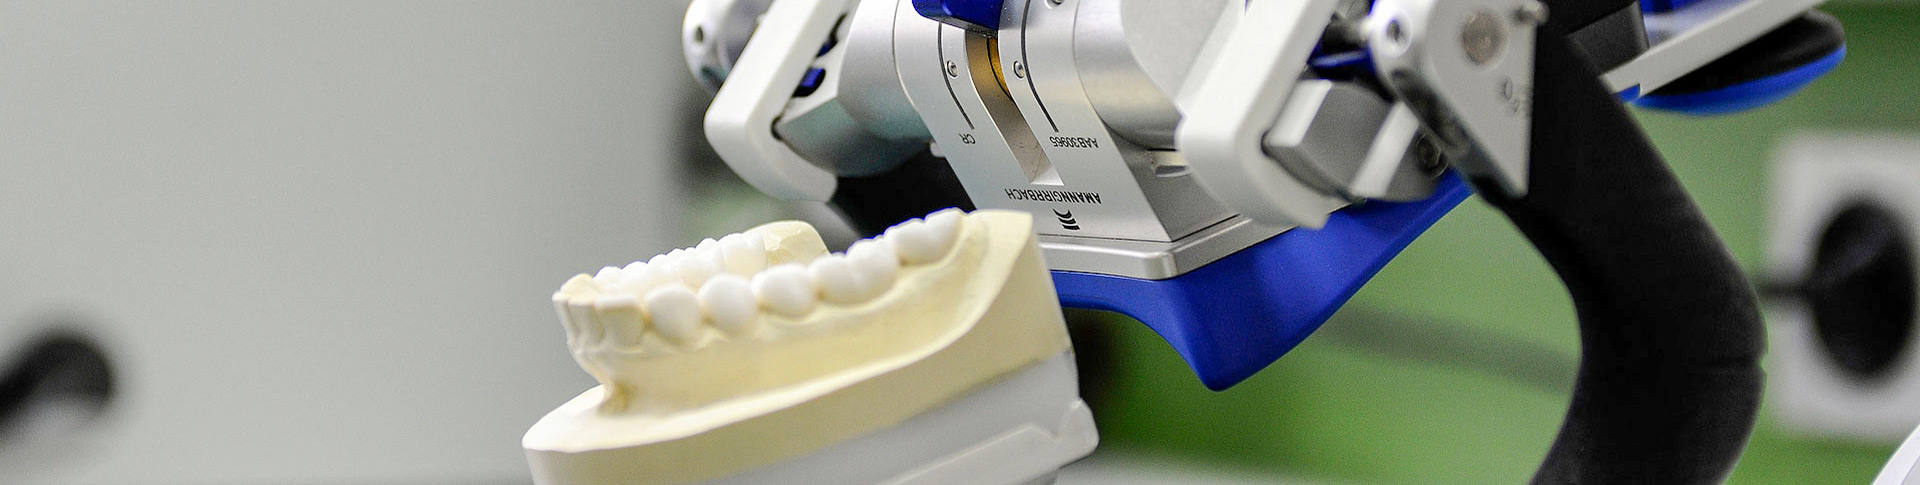 Dentallabor Zahnersatz erstellen